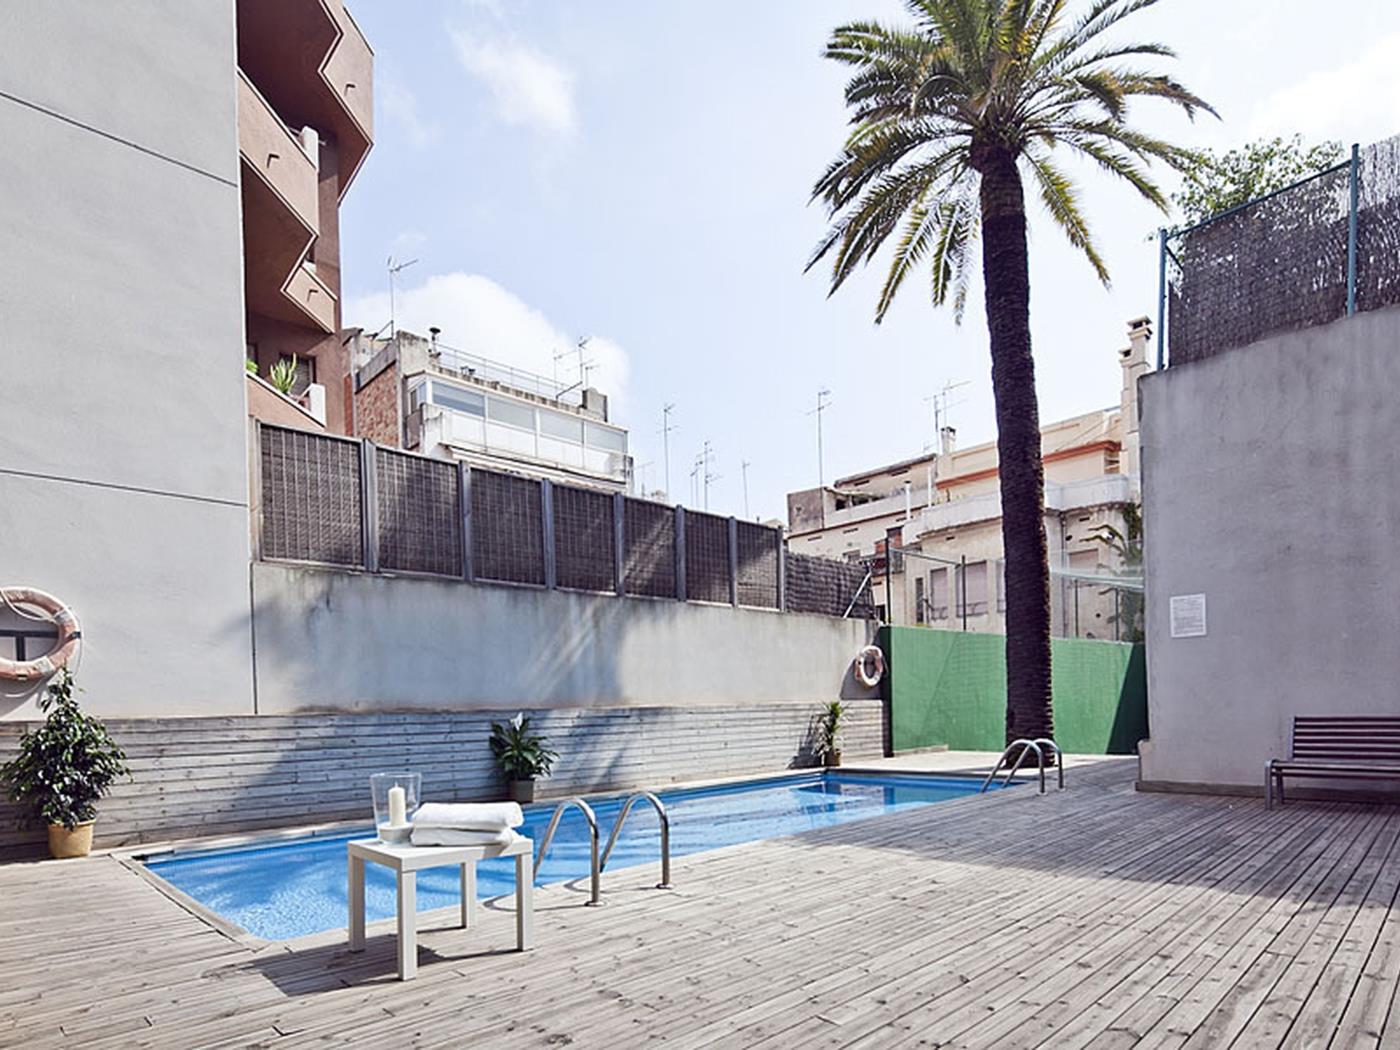 Alquiler de piso Erasmus en Barcelona con piscina y terraza en el centro - My Space Barcelona Apartamentos